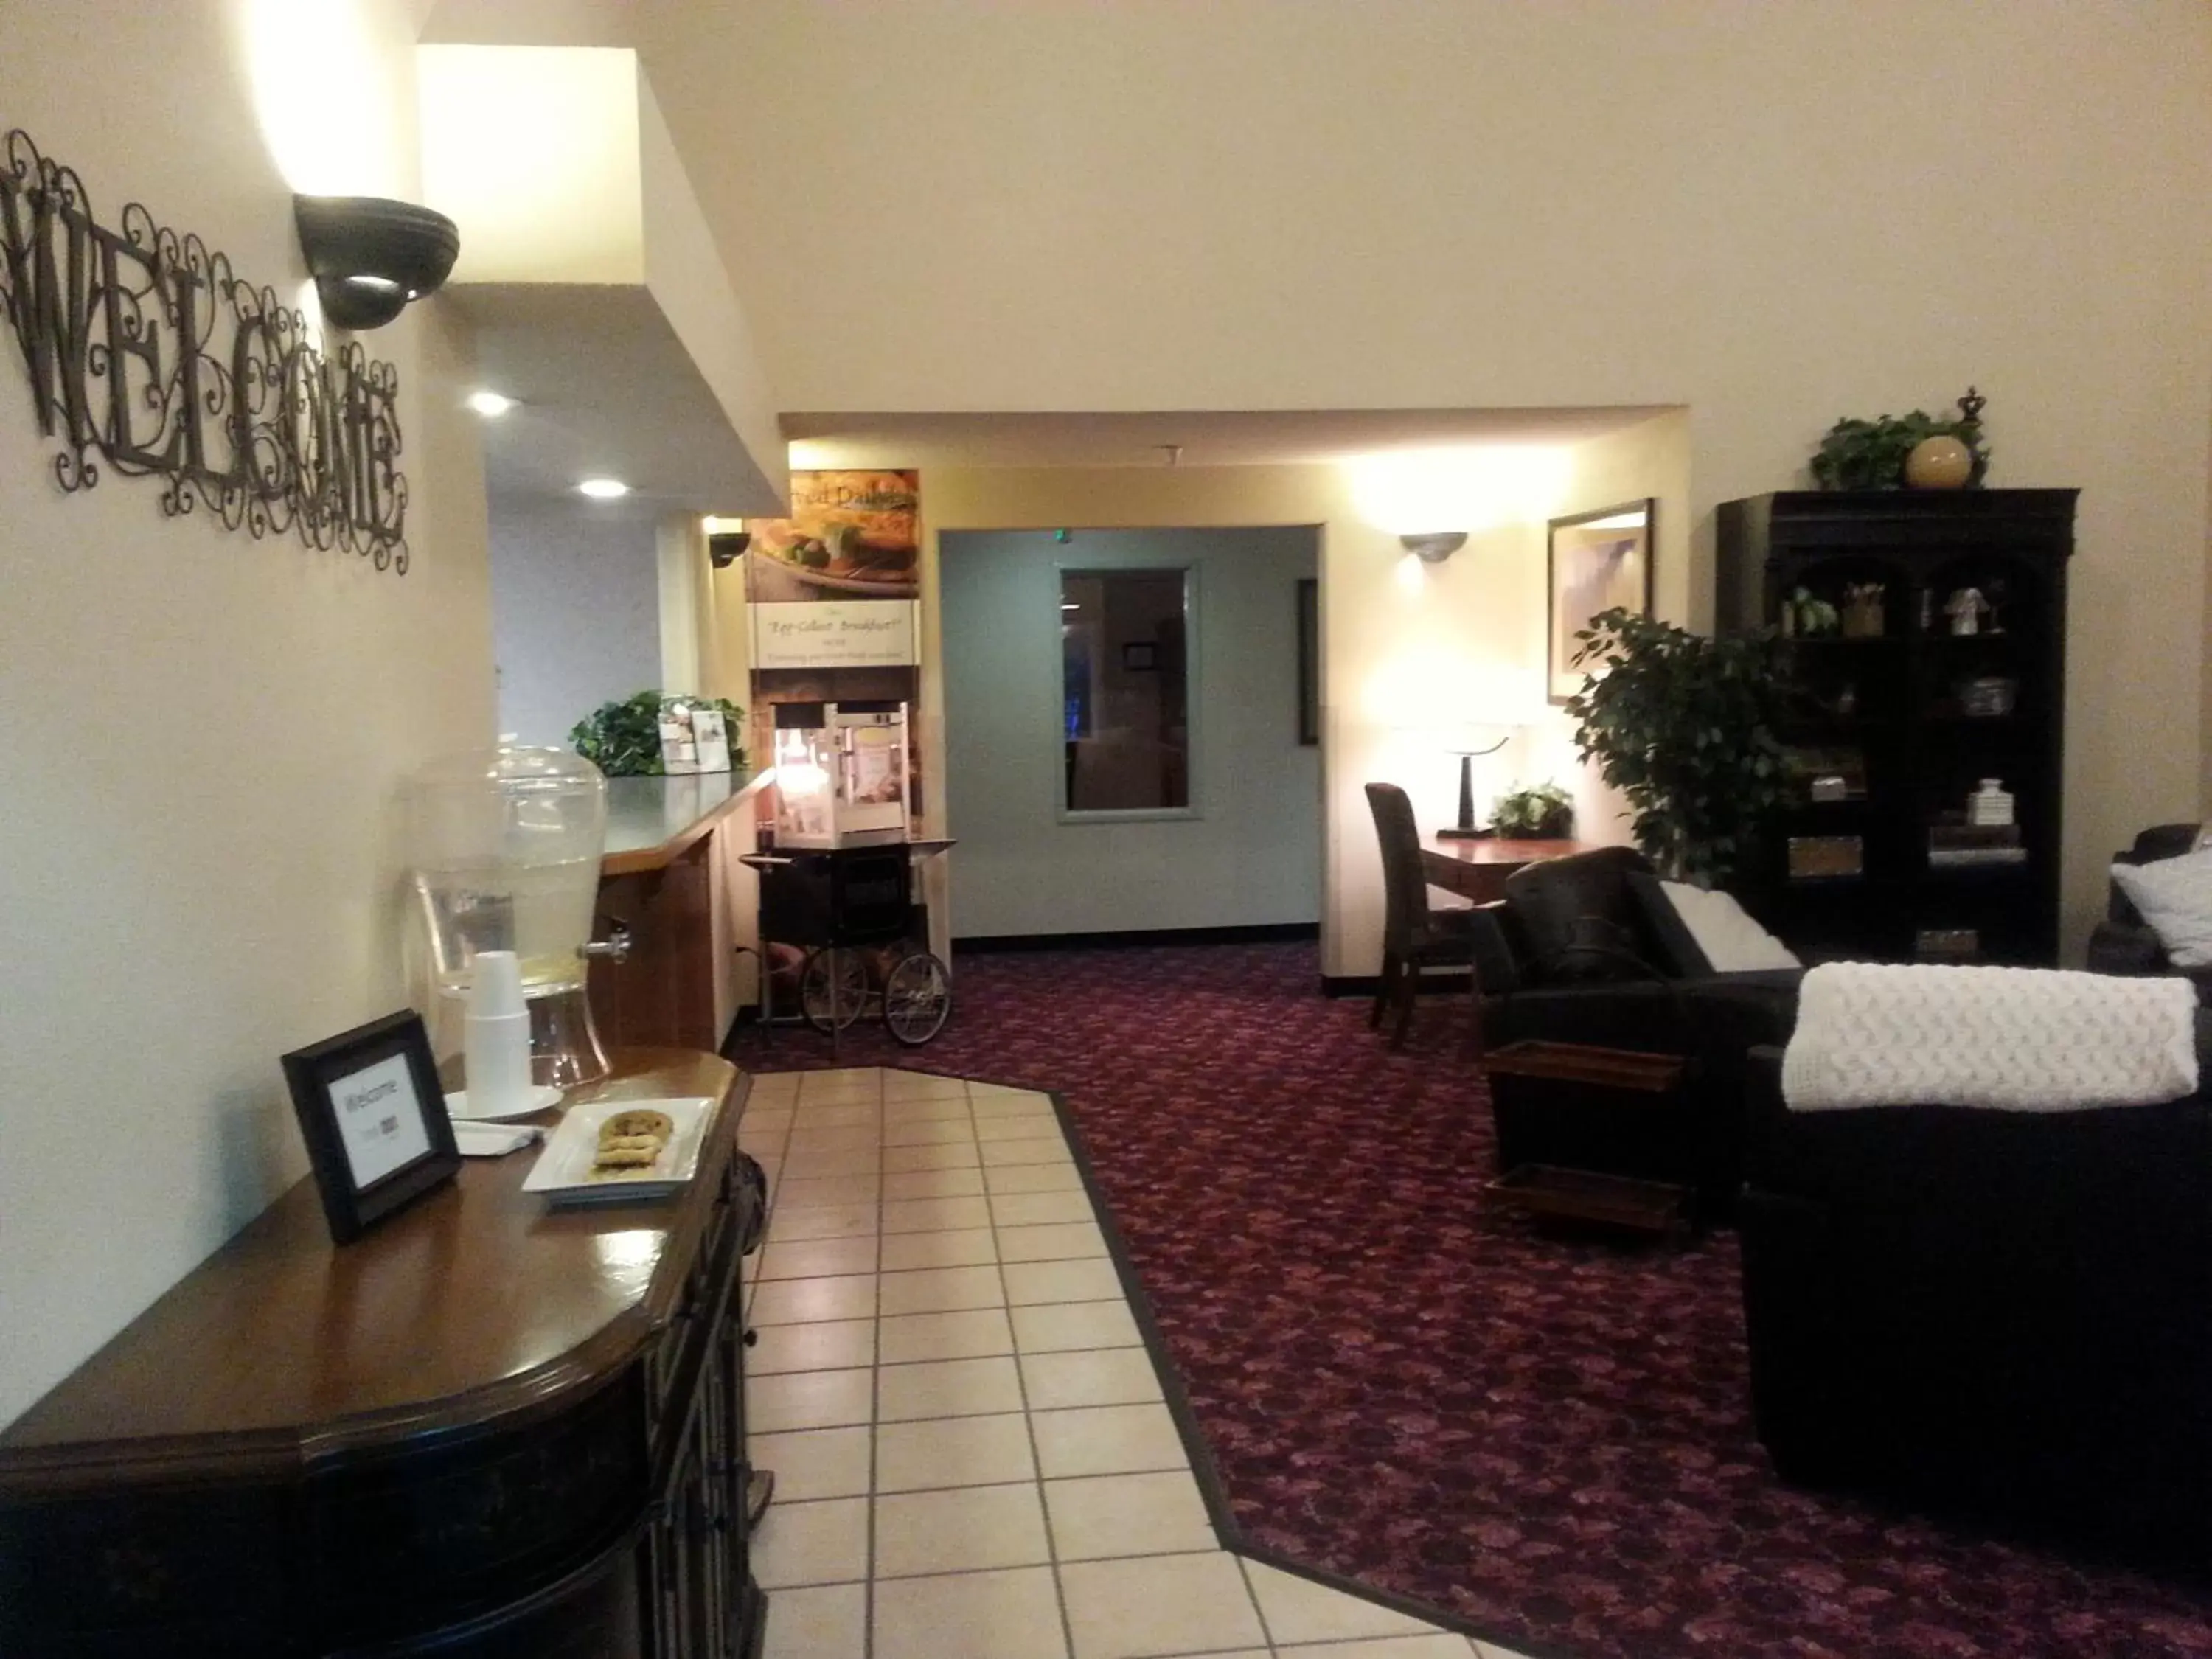 Lobby or reception, Lobby/Reception in Stay Wise Inn Cedaredge